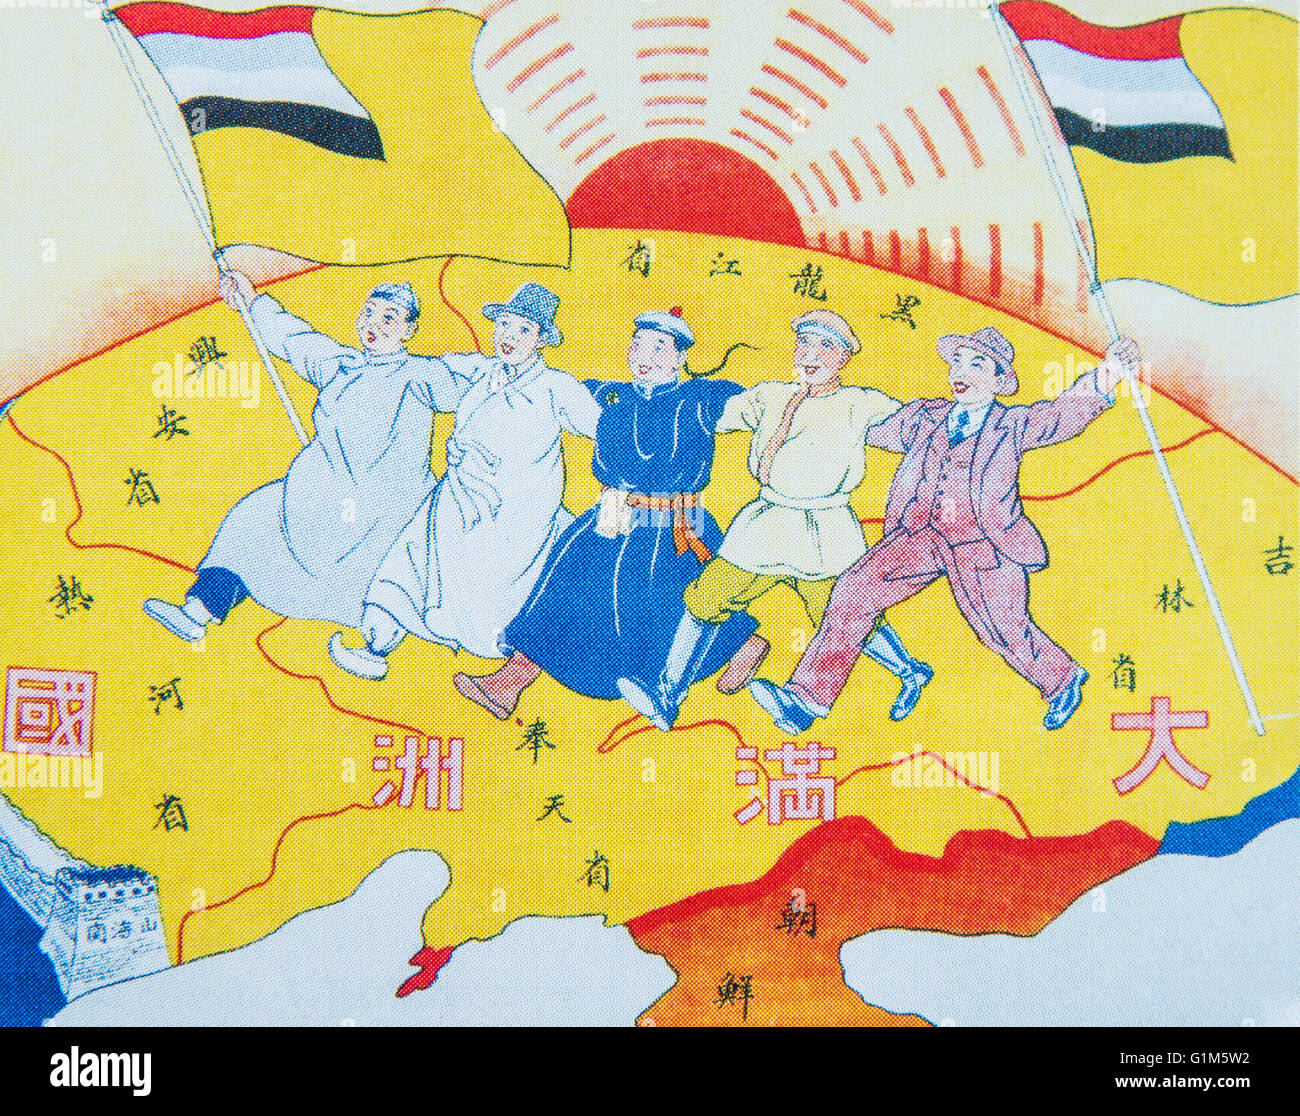 Plakat der Mandschurei, zeigt Slogan "Fünf Rennen unter einem Union".  Kennzeichnen Sie Farben Bedeutung ethnischer. Gelbe Manchurian, japanische Rote, blaue Han-Chinesen, mongolischen White, Black-Koreanisch. Stockfoto